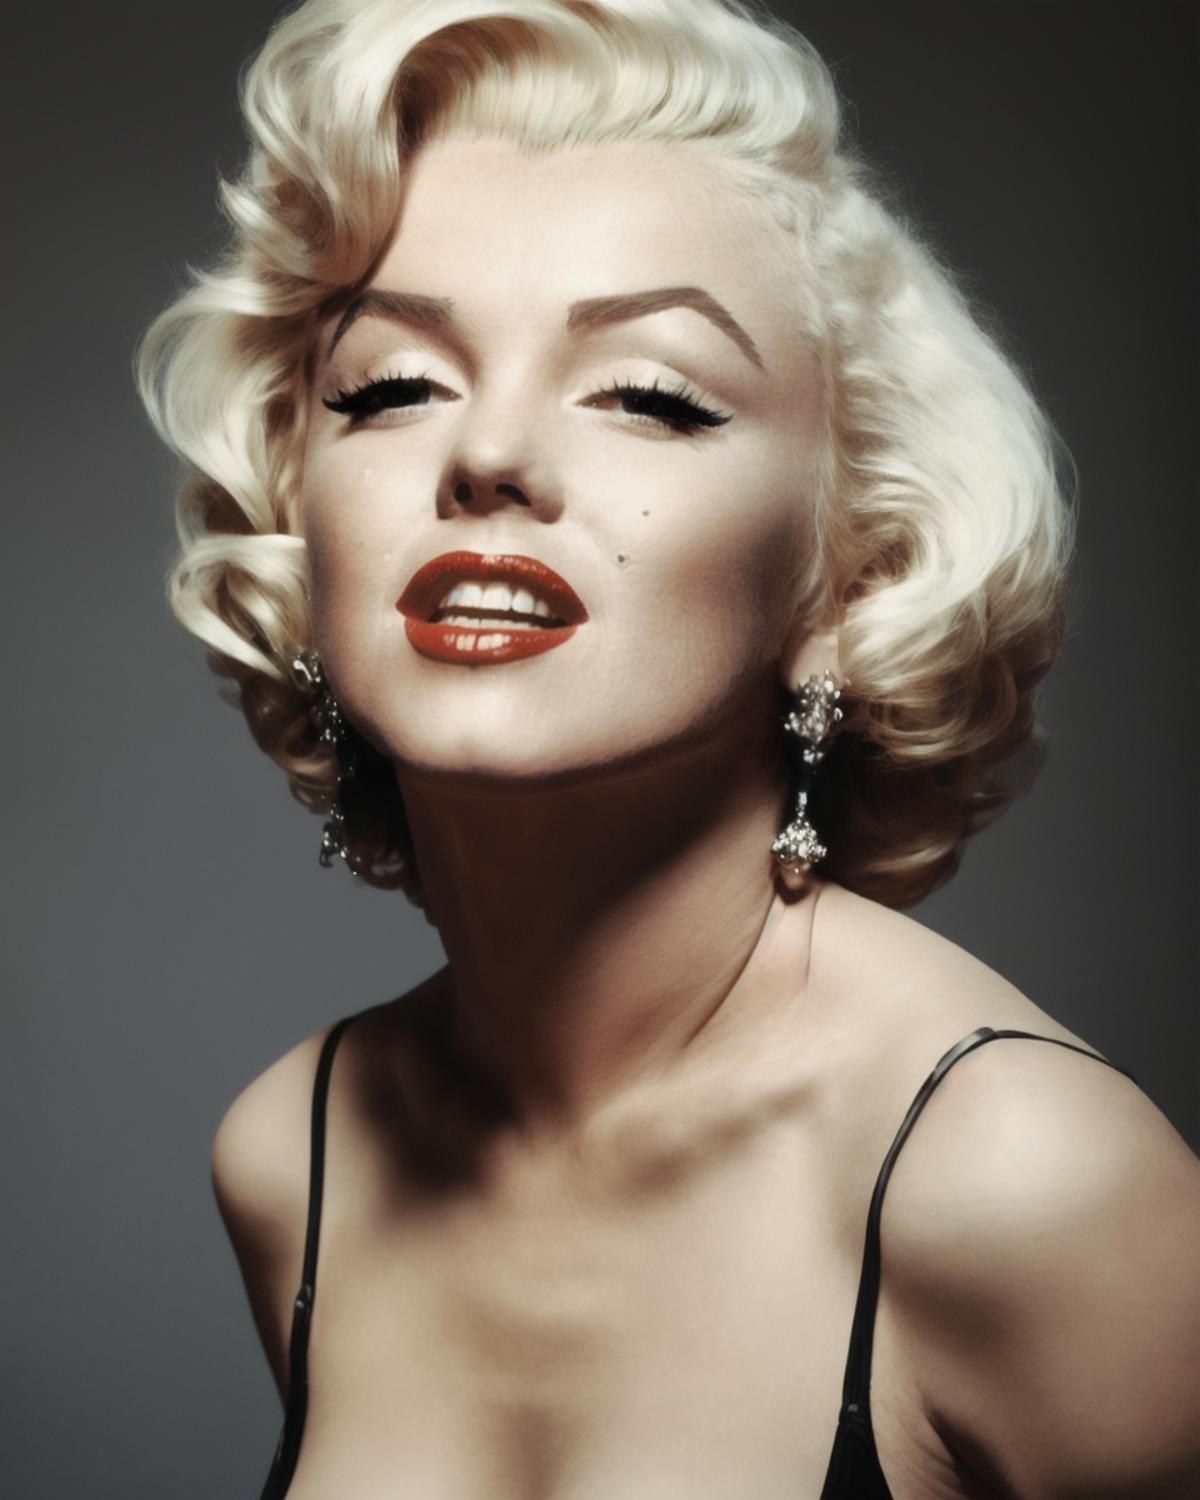 Marilyn Monroe image by radosen